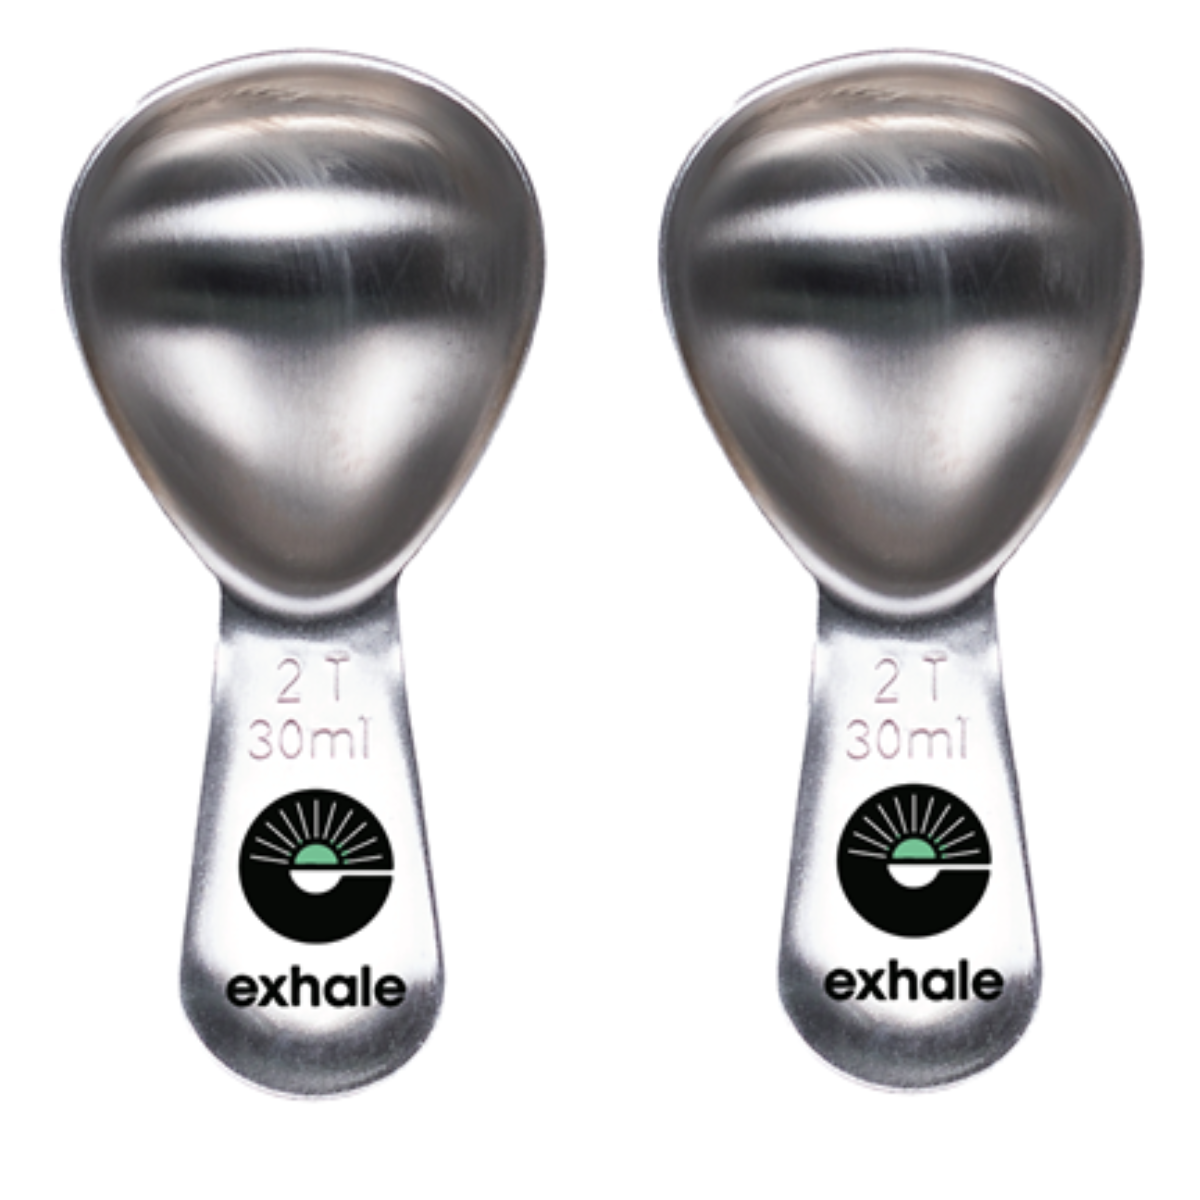 Exhale Coffee Scoop - 2Tbsp - Stainless Steel